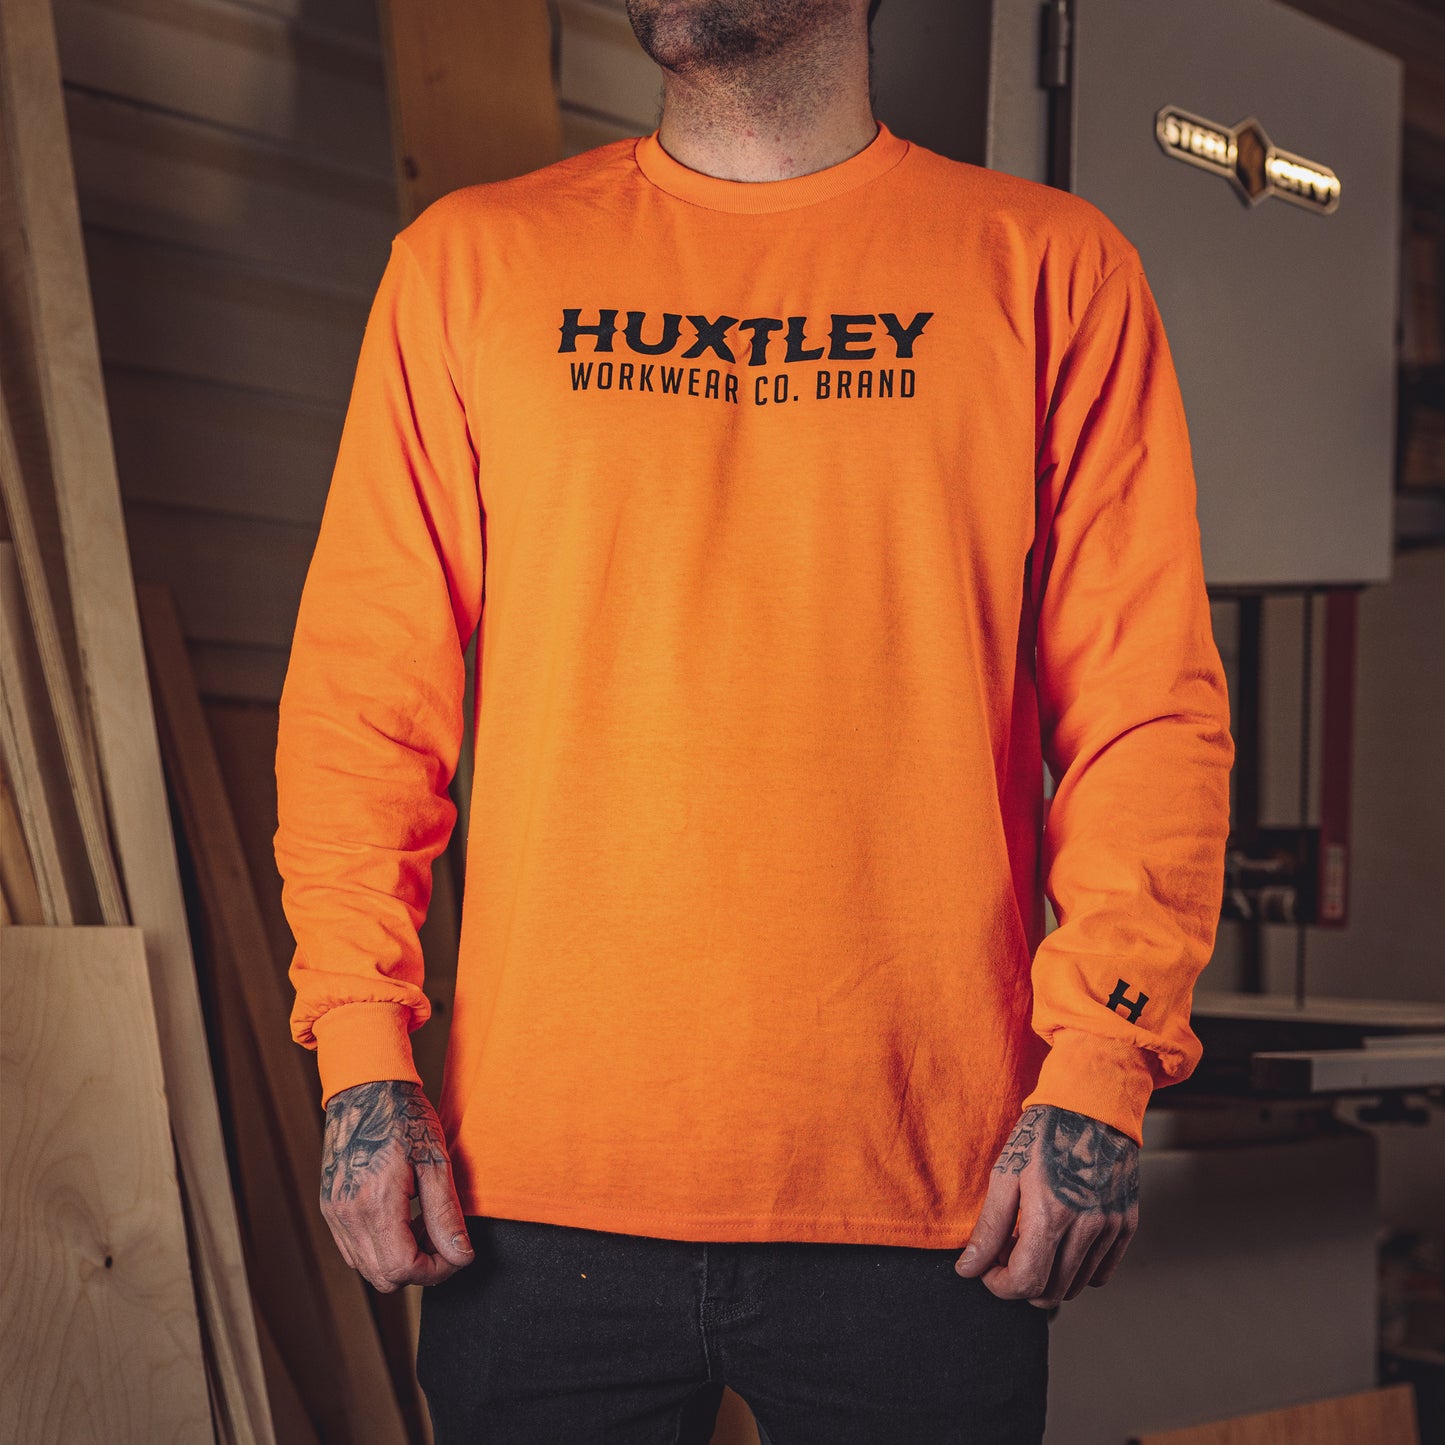 hx-226 long sleeve tee hi viz orange Huxtley